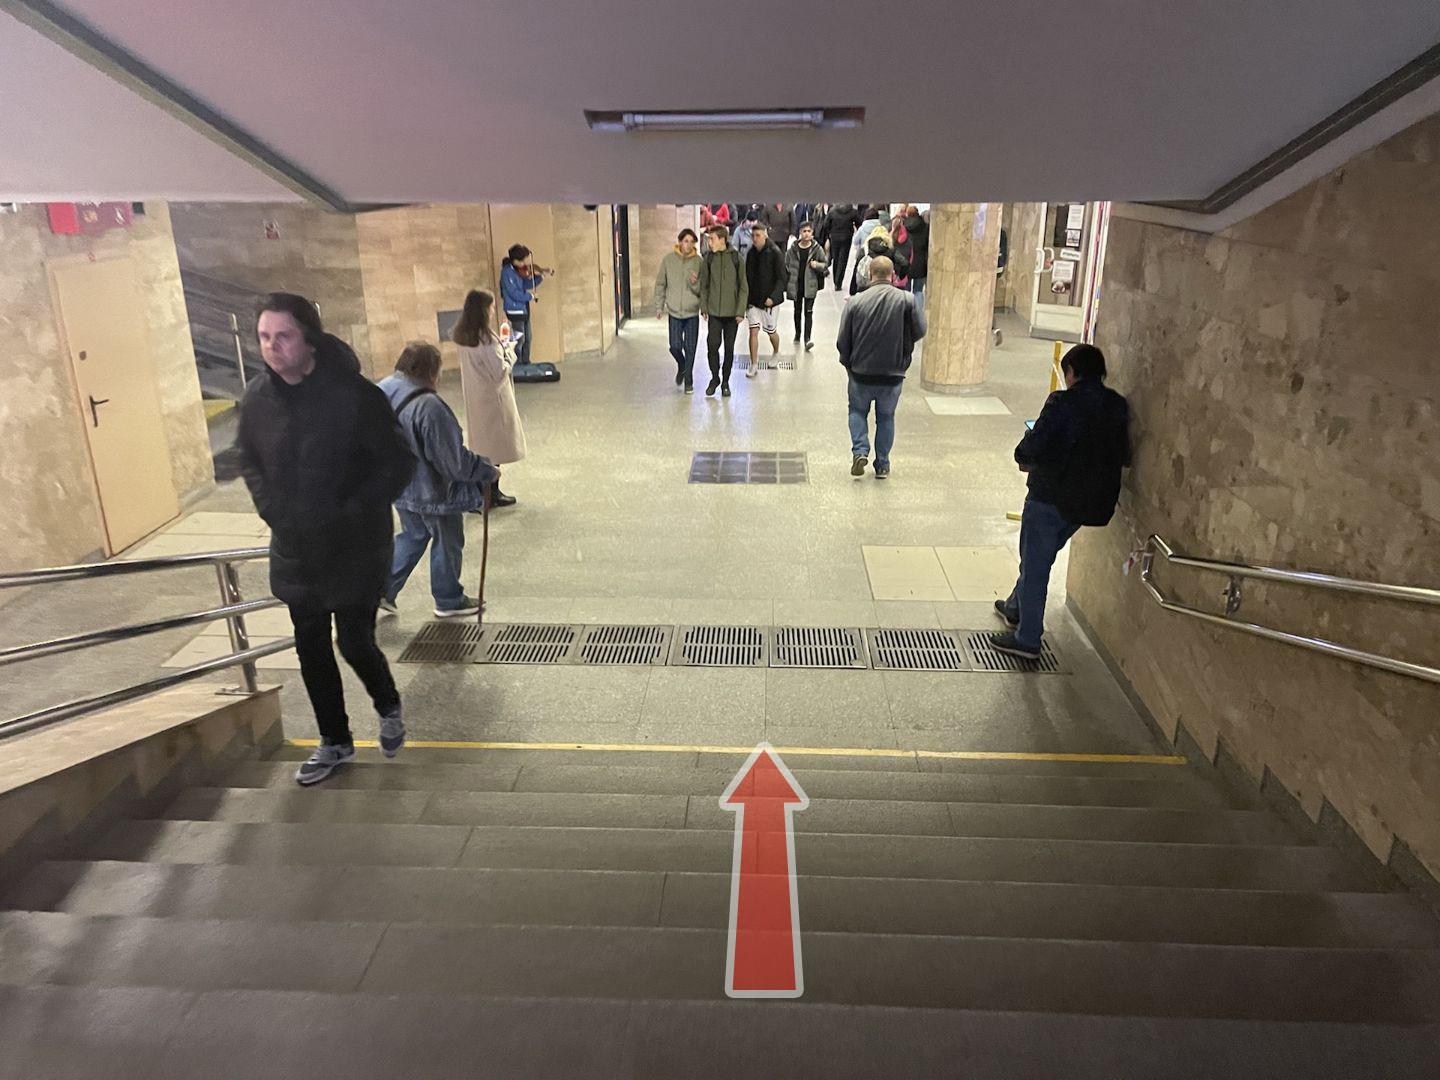 Схема прохода к магазину SigaretNet в переходе метро Каменная Горка